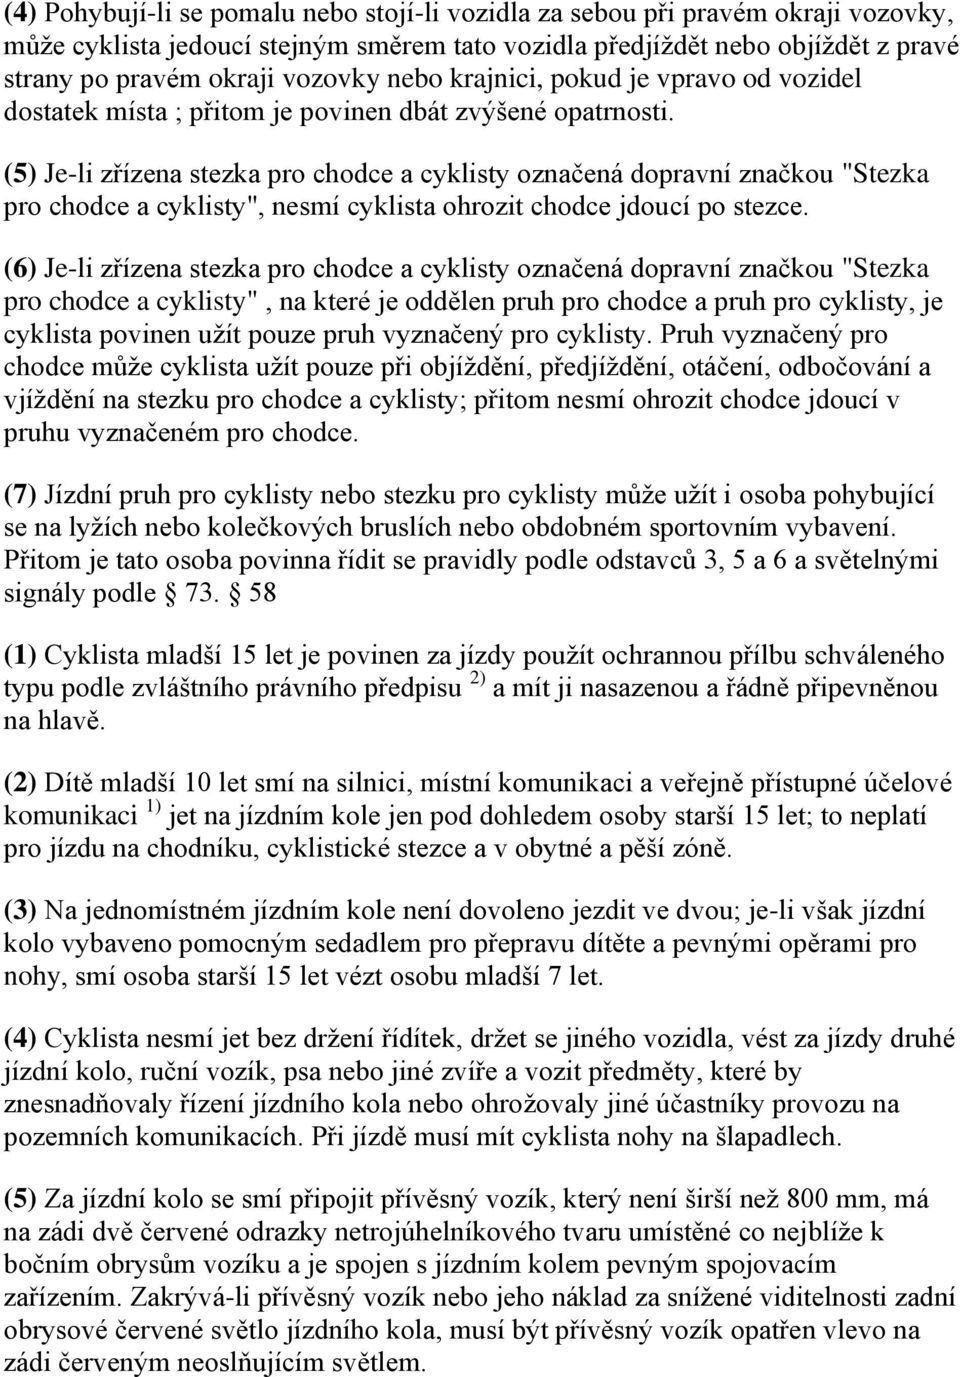 Legislativa o provozu jízdních kol vybavených pomocným spalovacím motorem  na území ČR. - PDF Stažení zdarma